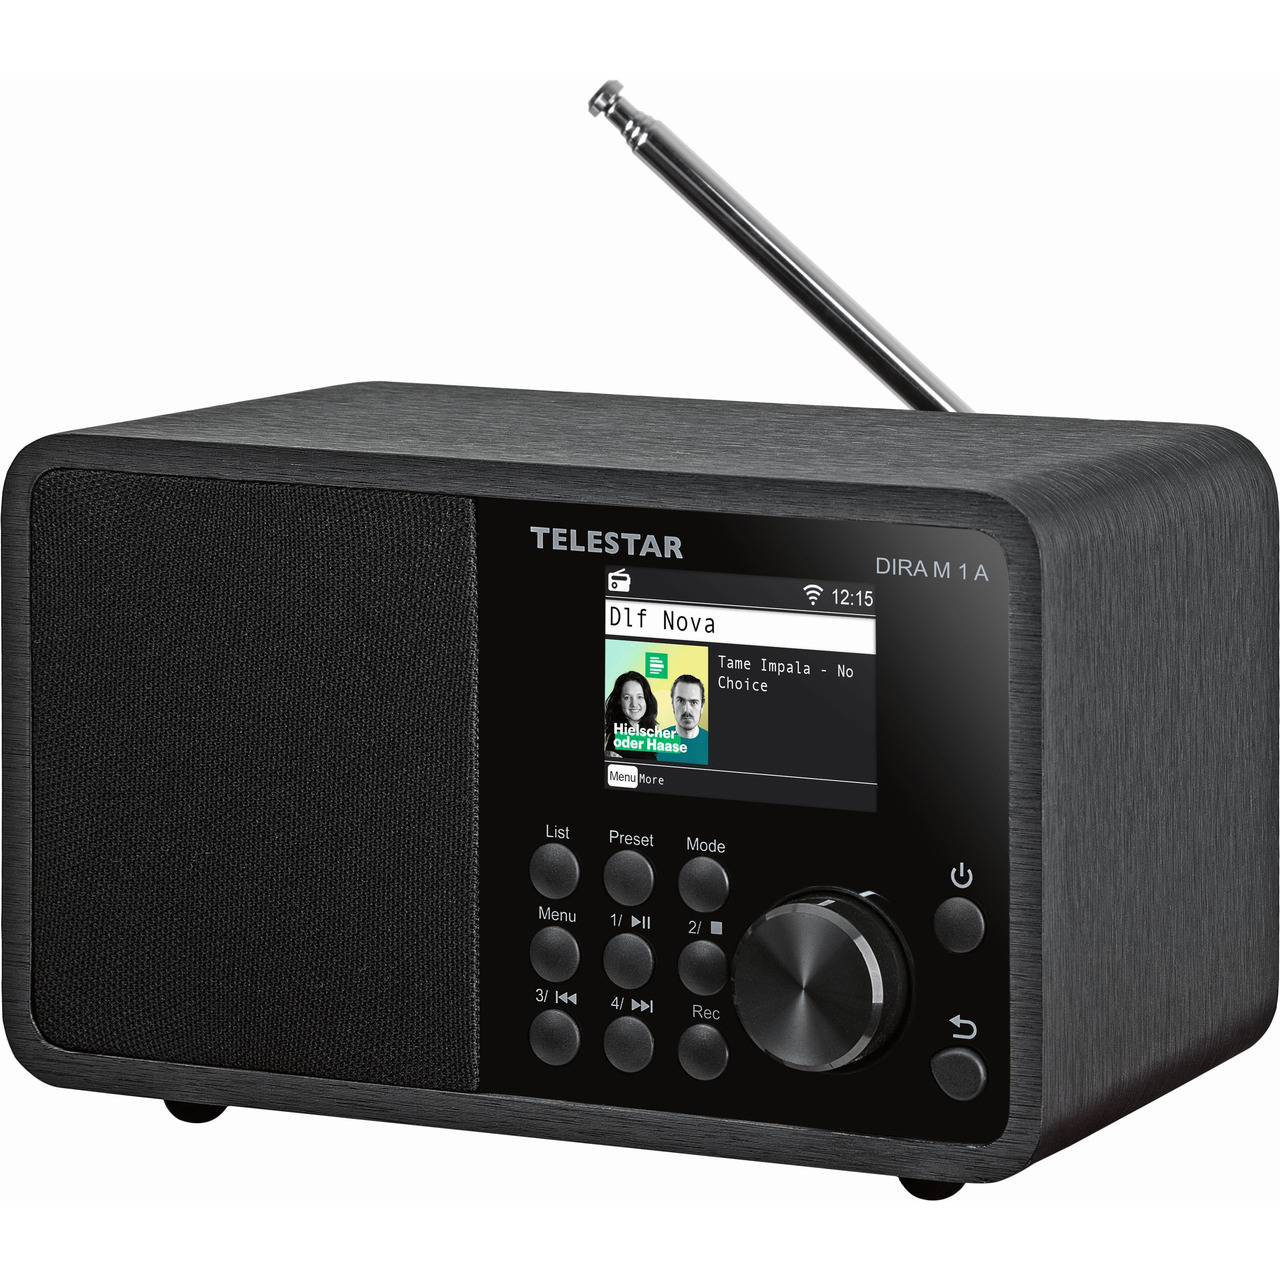 Telestar Hybrid-Digitalradio DIRA M1A mit Notfall-Warnsystem EWF- DAB+-UKW-Internetradio- Bluetooth